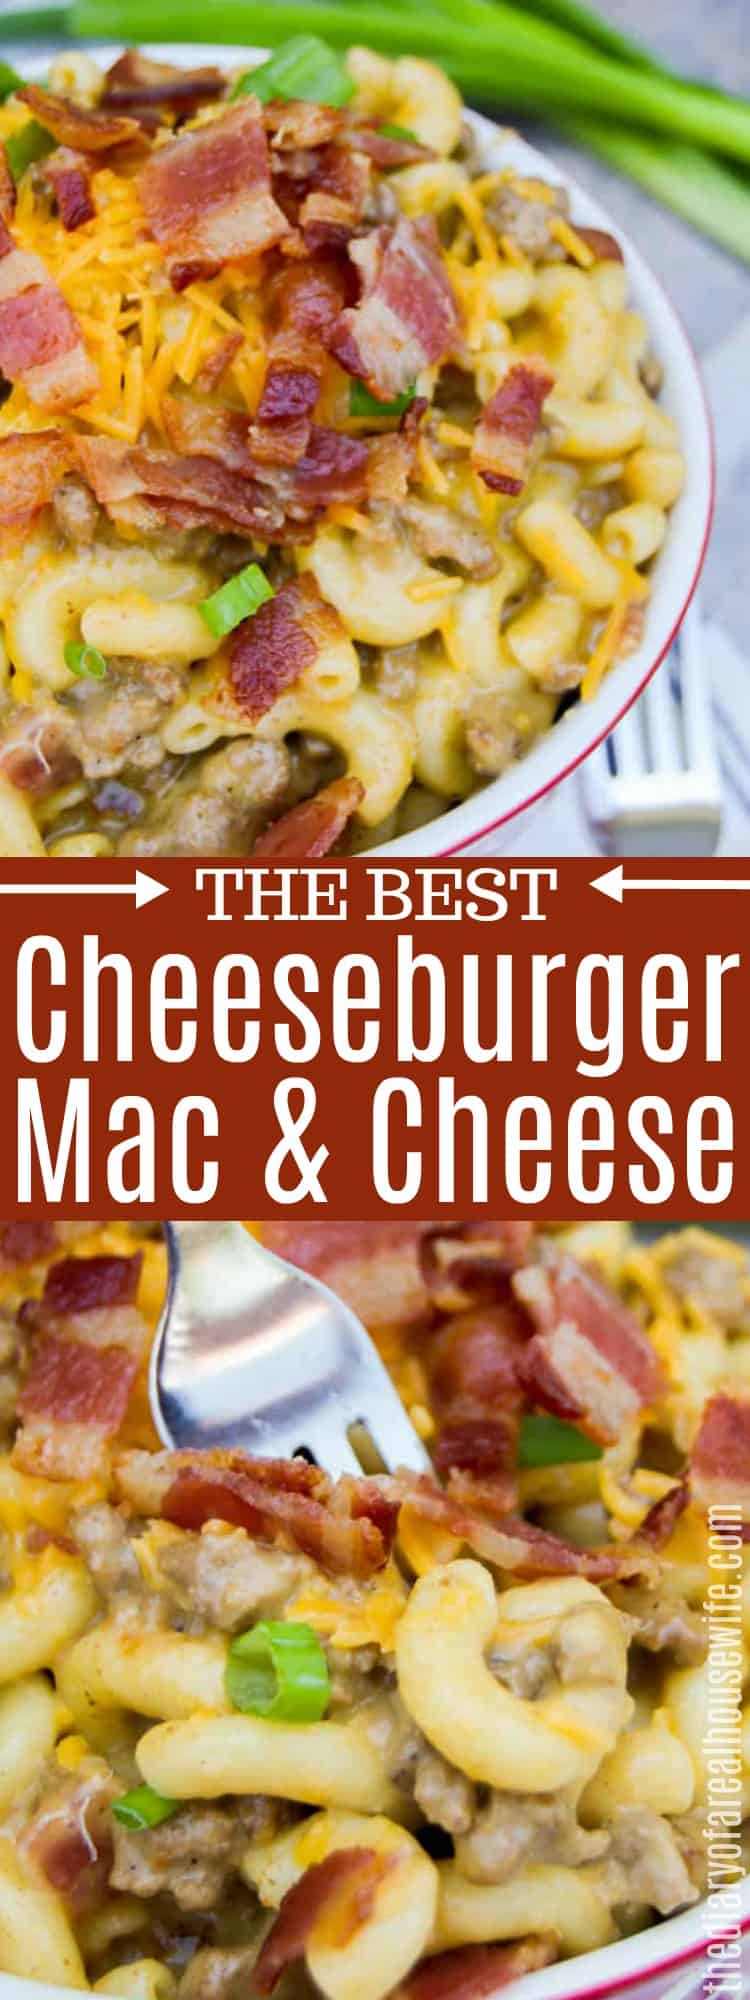 Cheeseburger Mac and Cheese